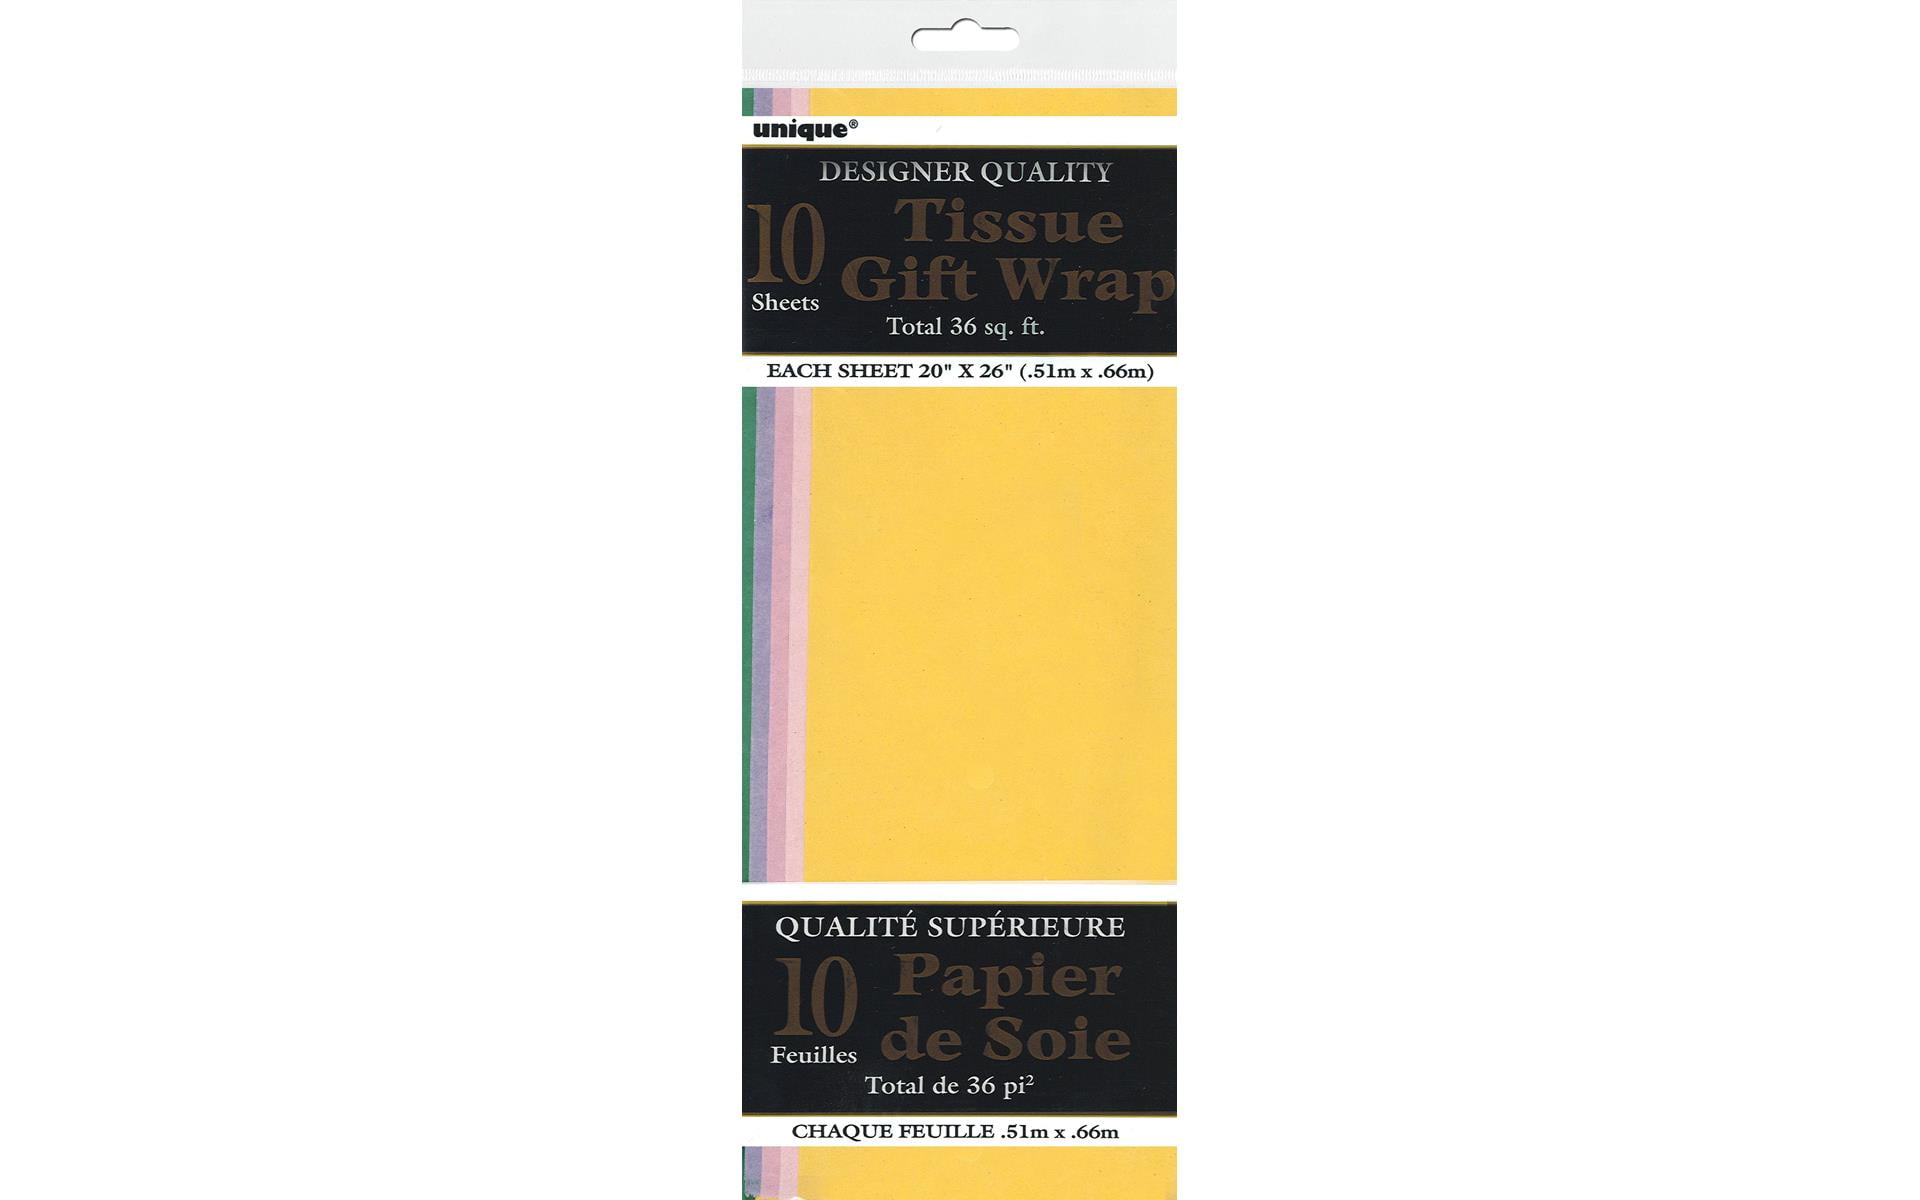 Premium Gift Wrap Tissue Paper 15 x 20 - 100 Pack (Antique Gold)